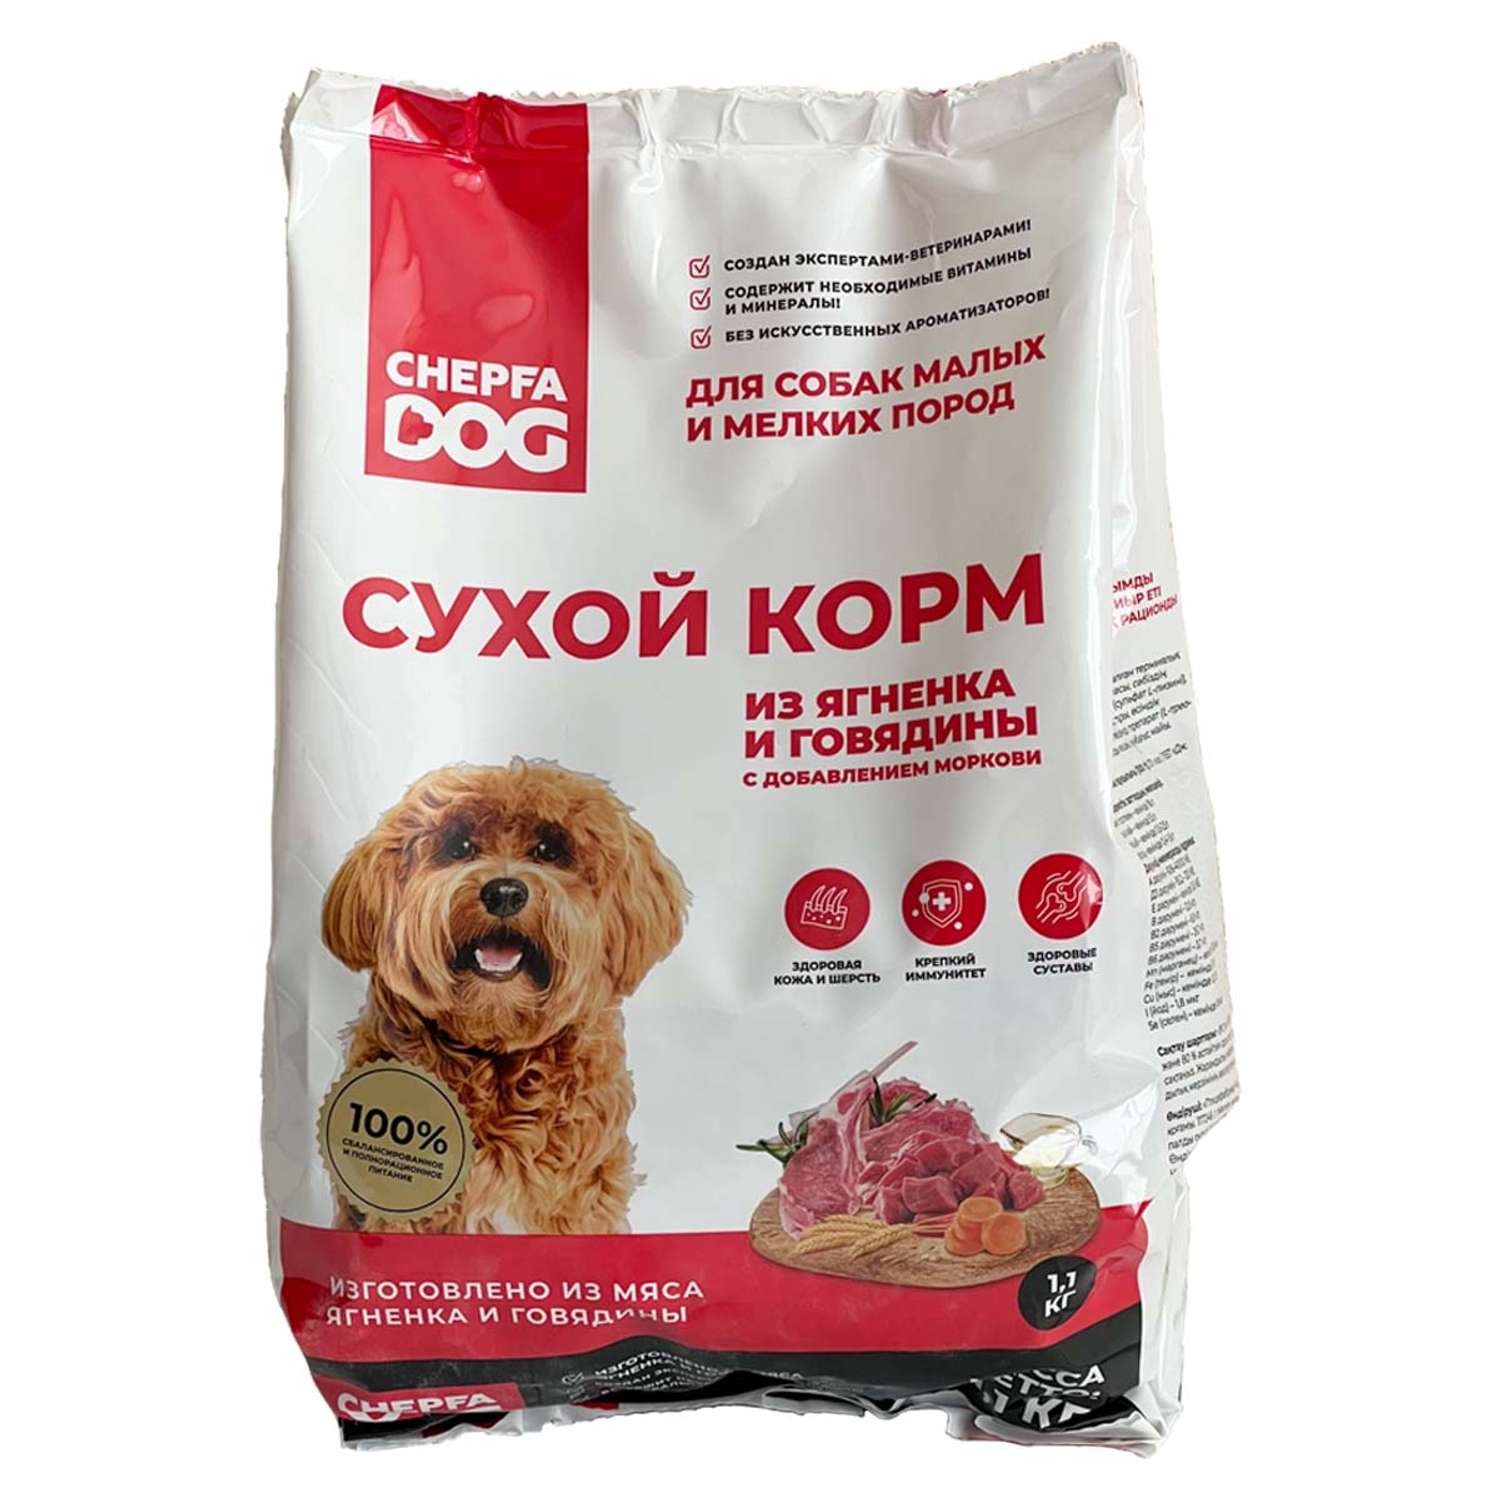 Сухой корм Chepfa Dog полнорационный ягненок и говядина 1.1 кг для взрослых собак малых и мелких пород - фото 1